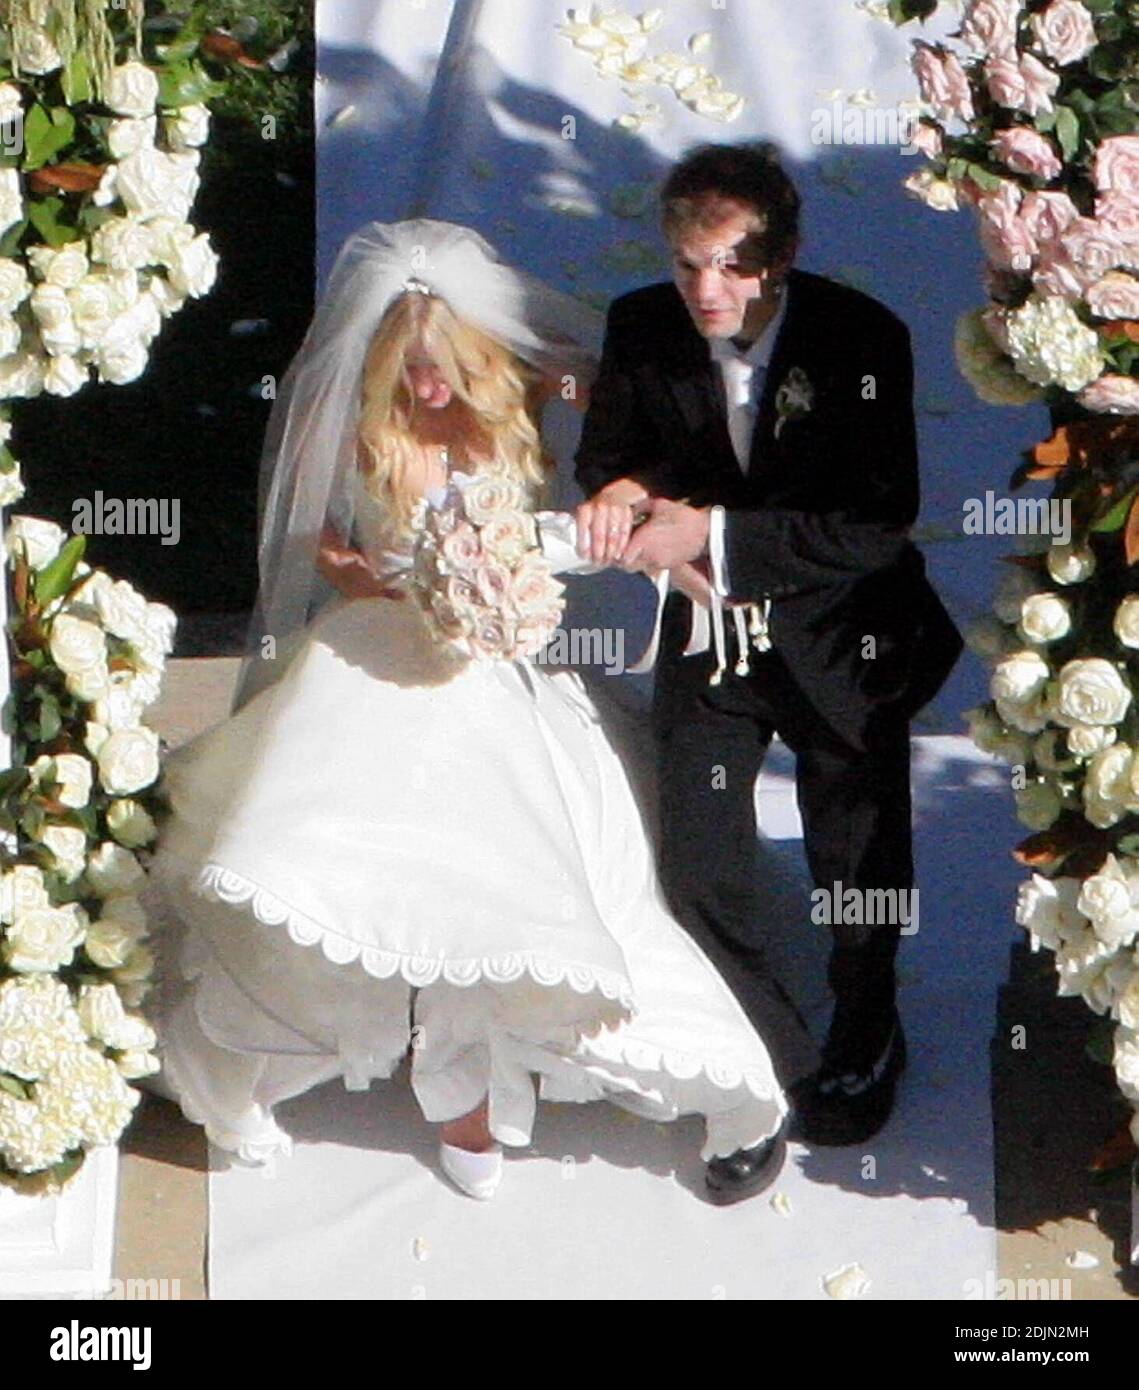 Avril Lavigne se casó con su novia, Deryck Whibley, en una romántica  ceremonia al aire libre, no confesional el sábado a las 5pm en una finca  privada en Montecito, CA. La novia,